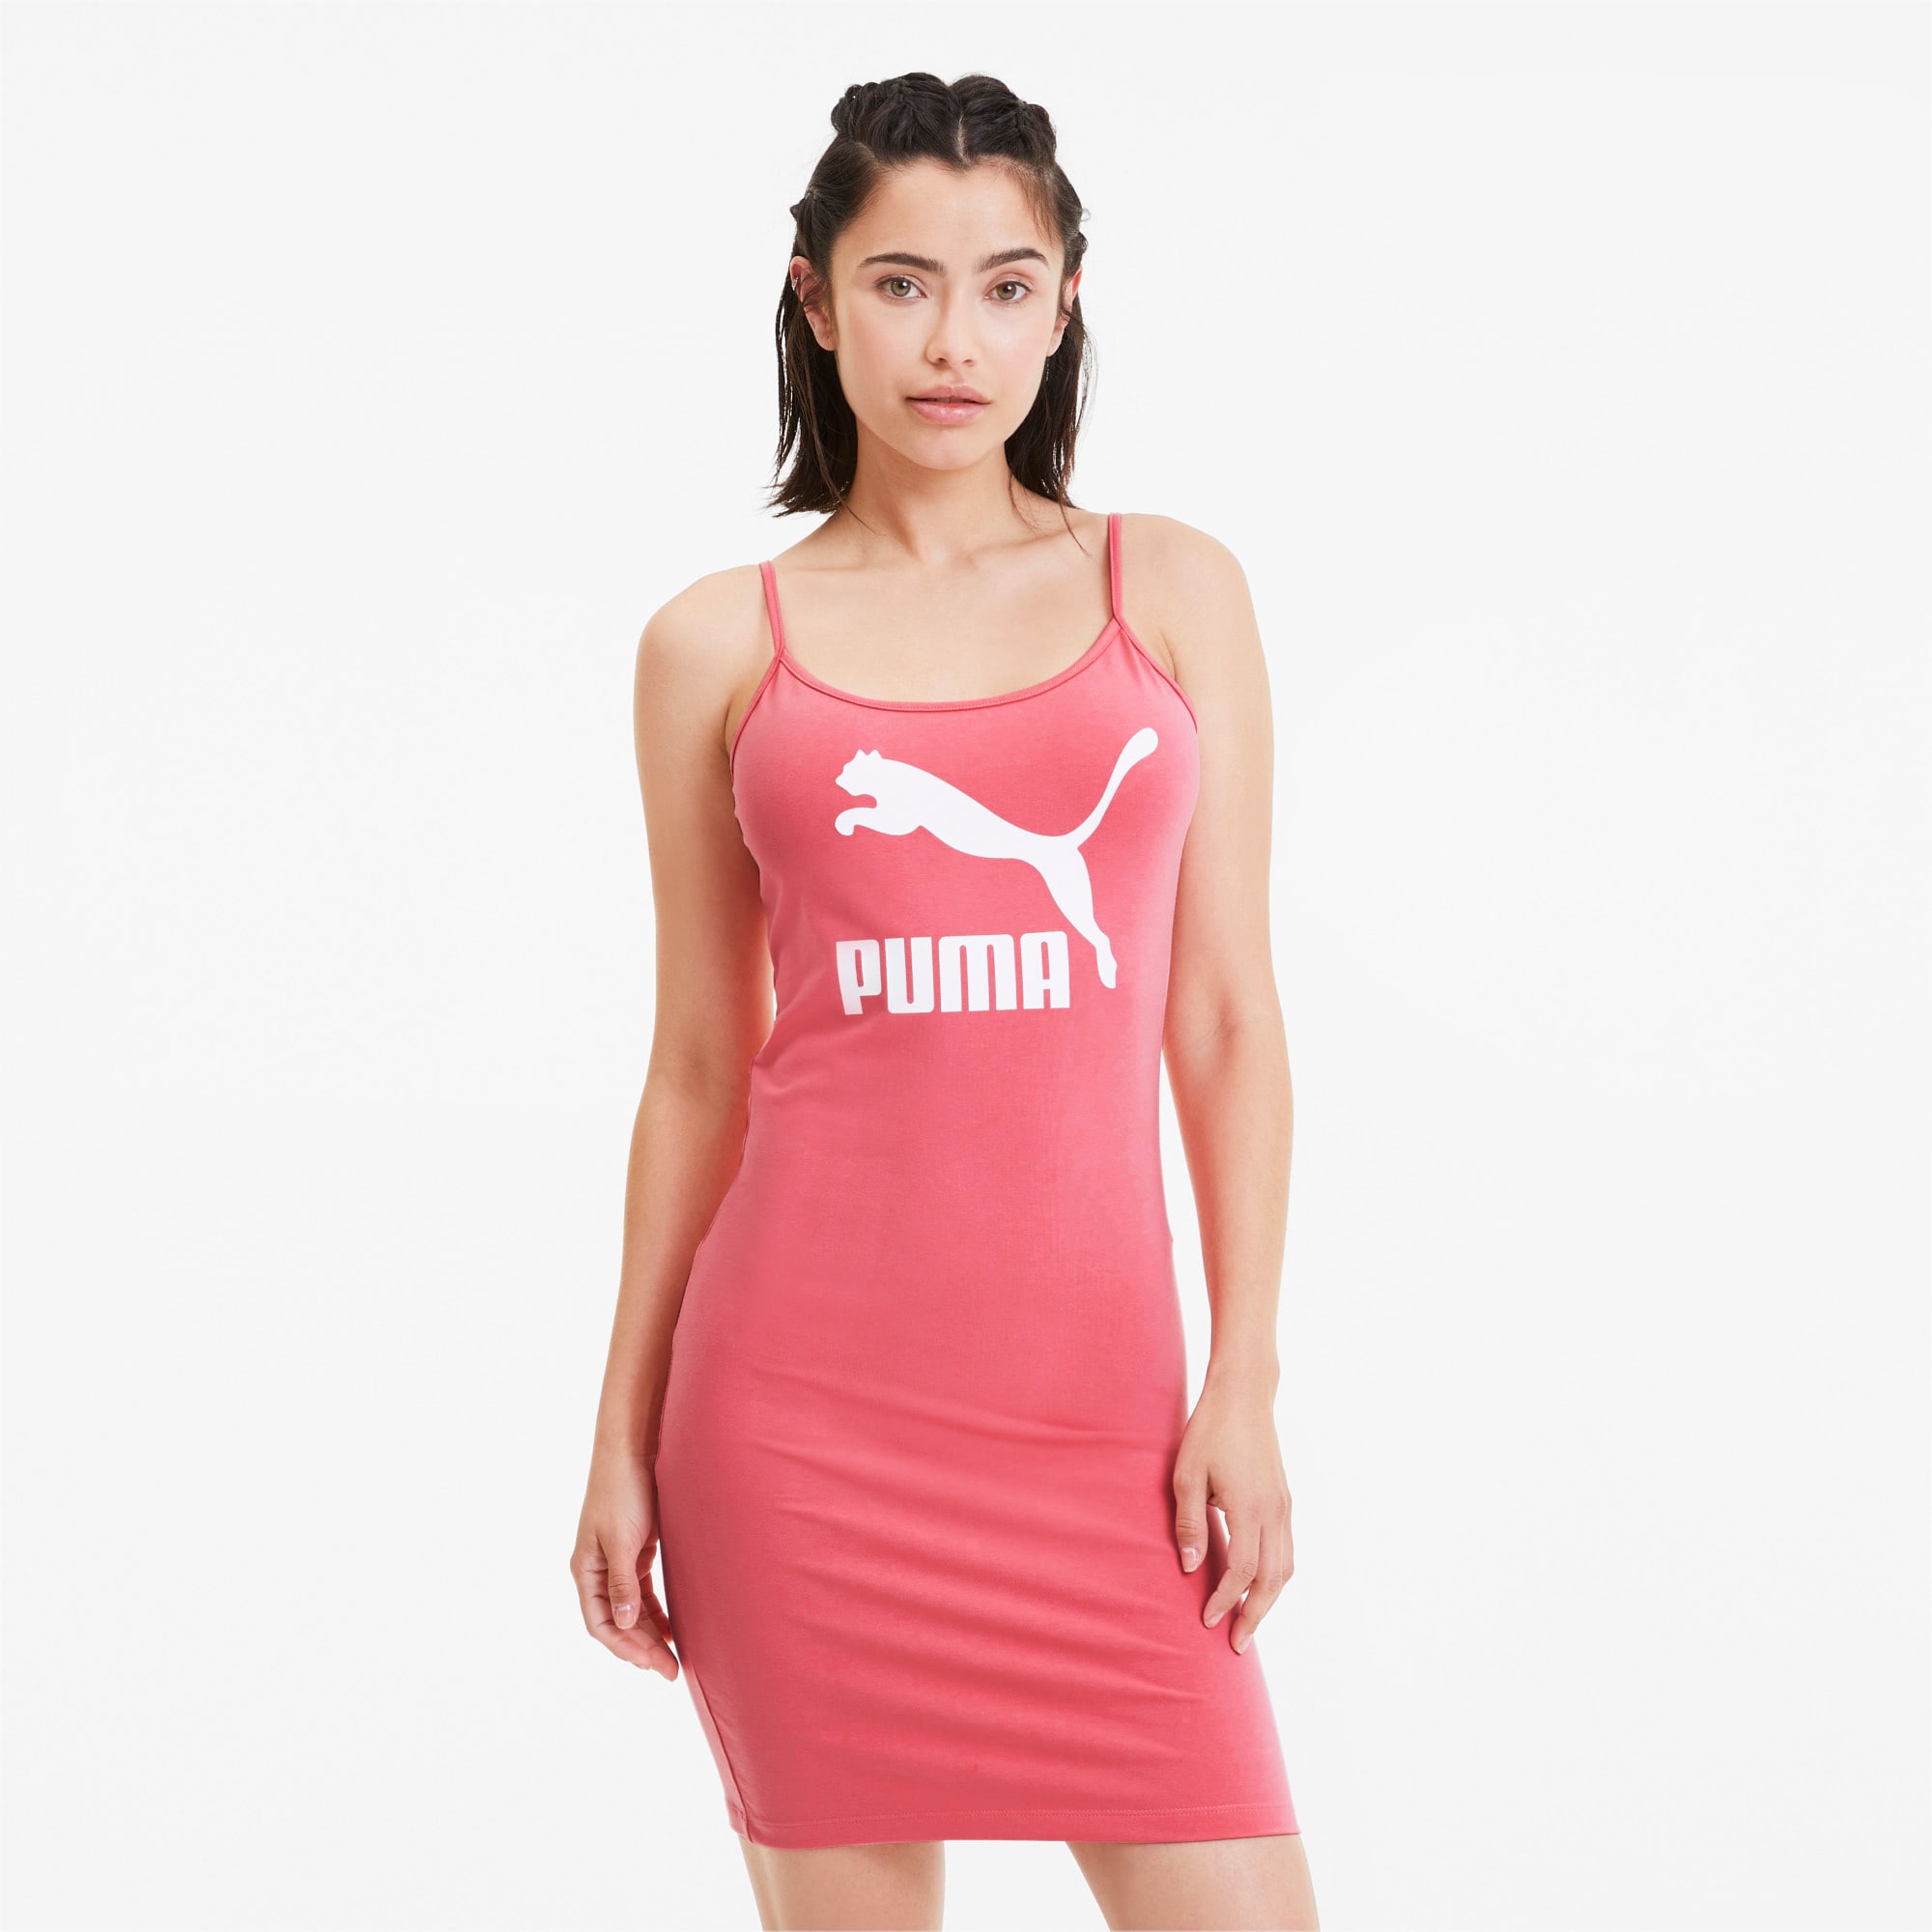 puma dress pink